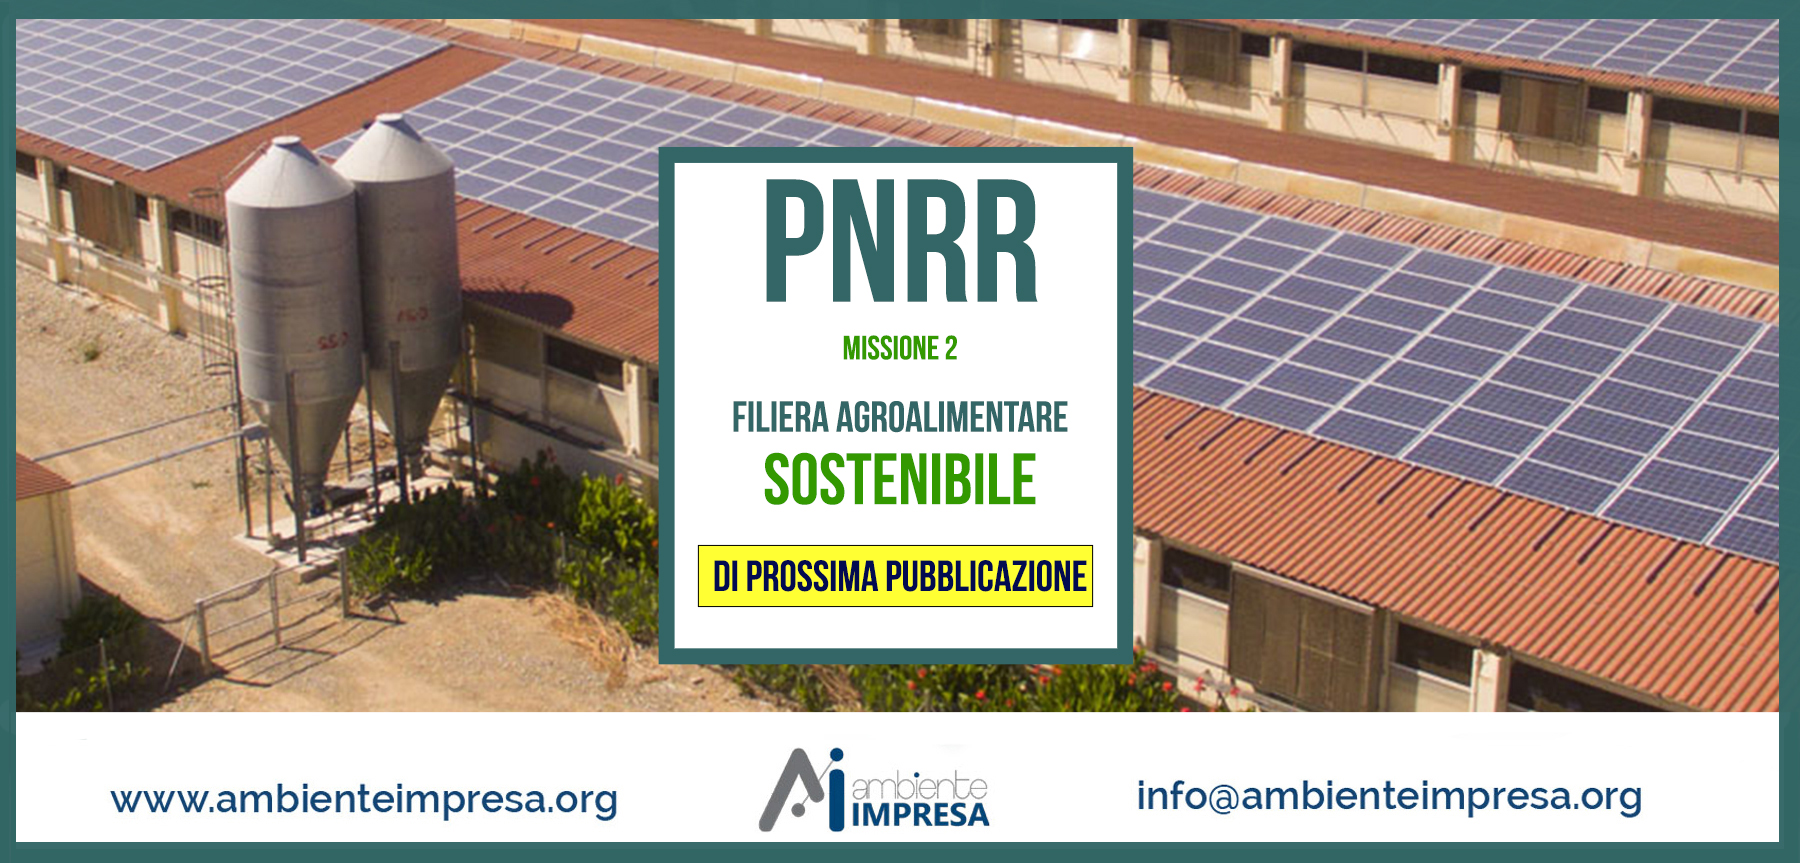 PNRR - MISSIONE 2 - FILIERA AGROALIMENTARE SOSTENIBILE - Ambiente Impresa srl - Cagliari